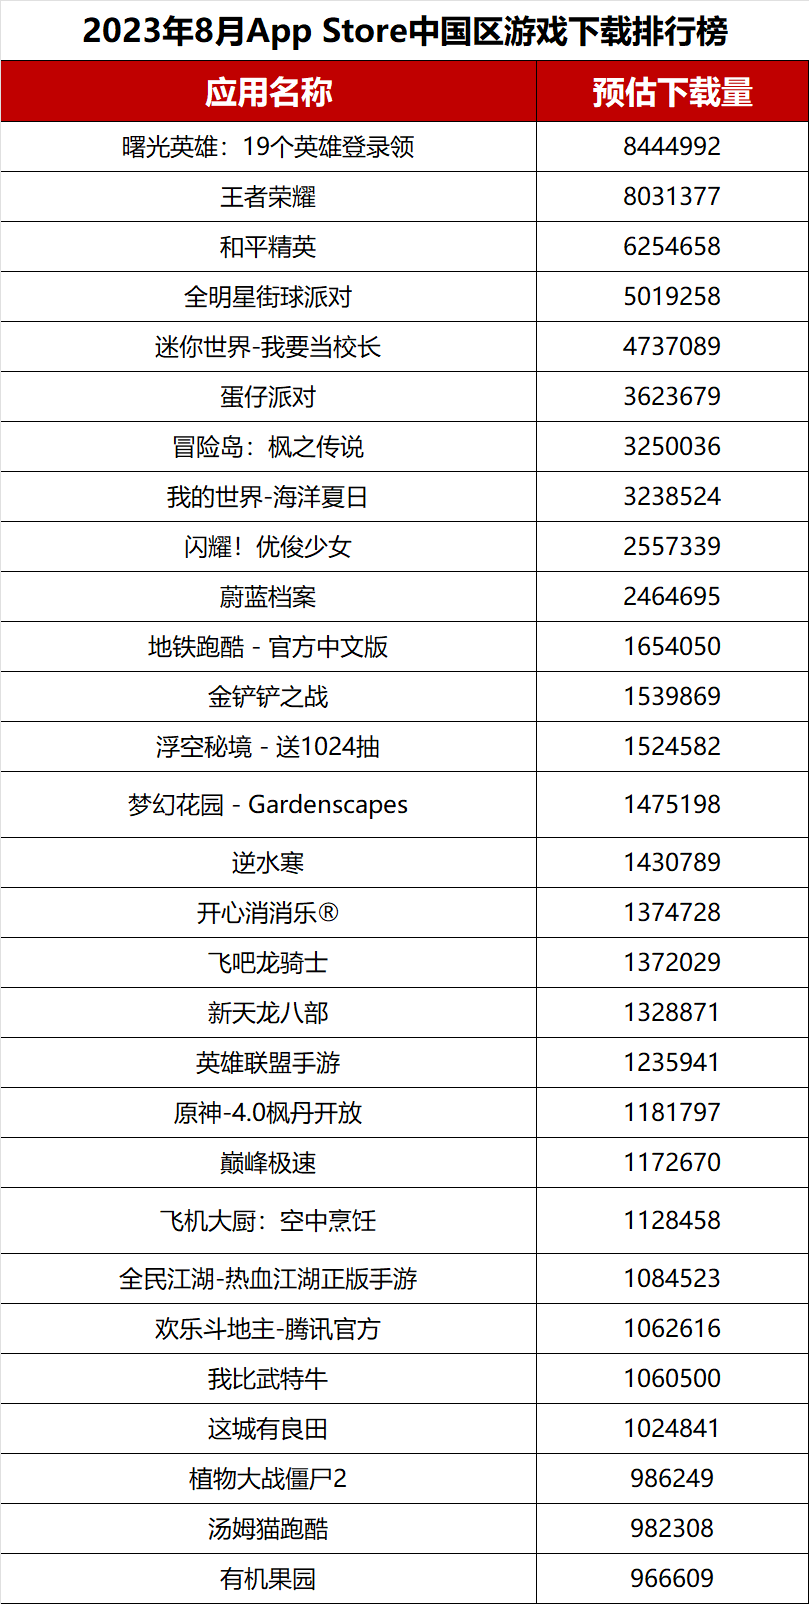 【榜单】2023年8月手游产品及开发商iOS下载榜和收入榜TOP30